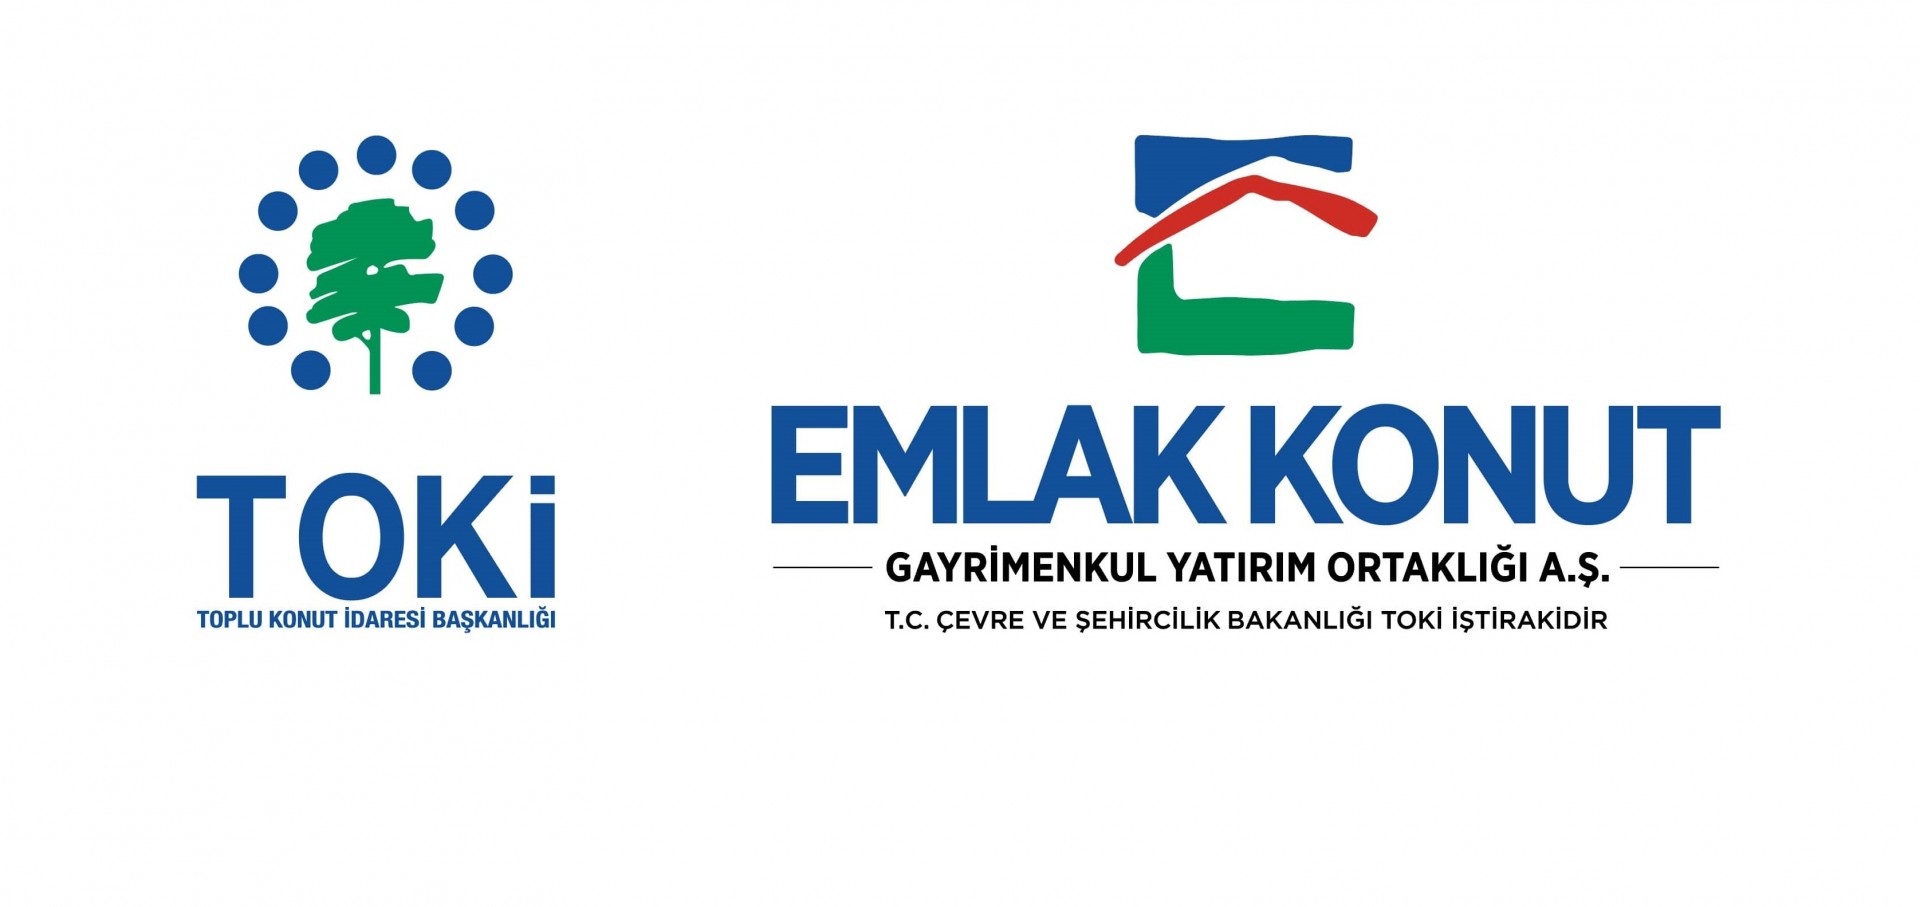 شركتي توكي وأملاك كونوت - أهم شركات الإنشائات التركية 12